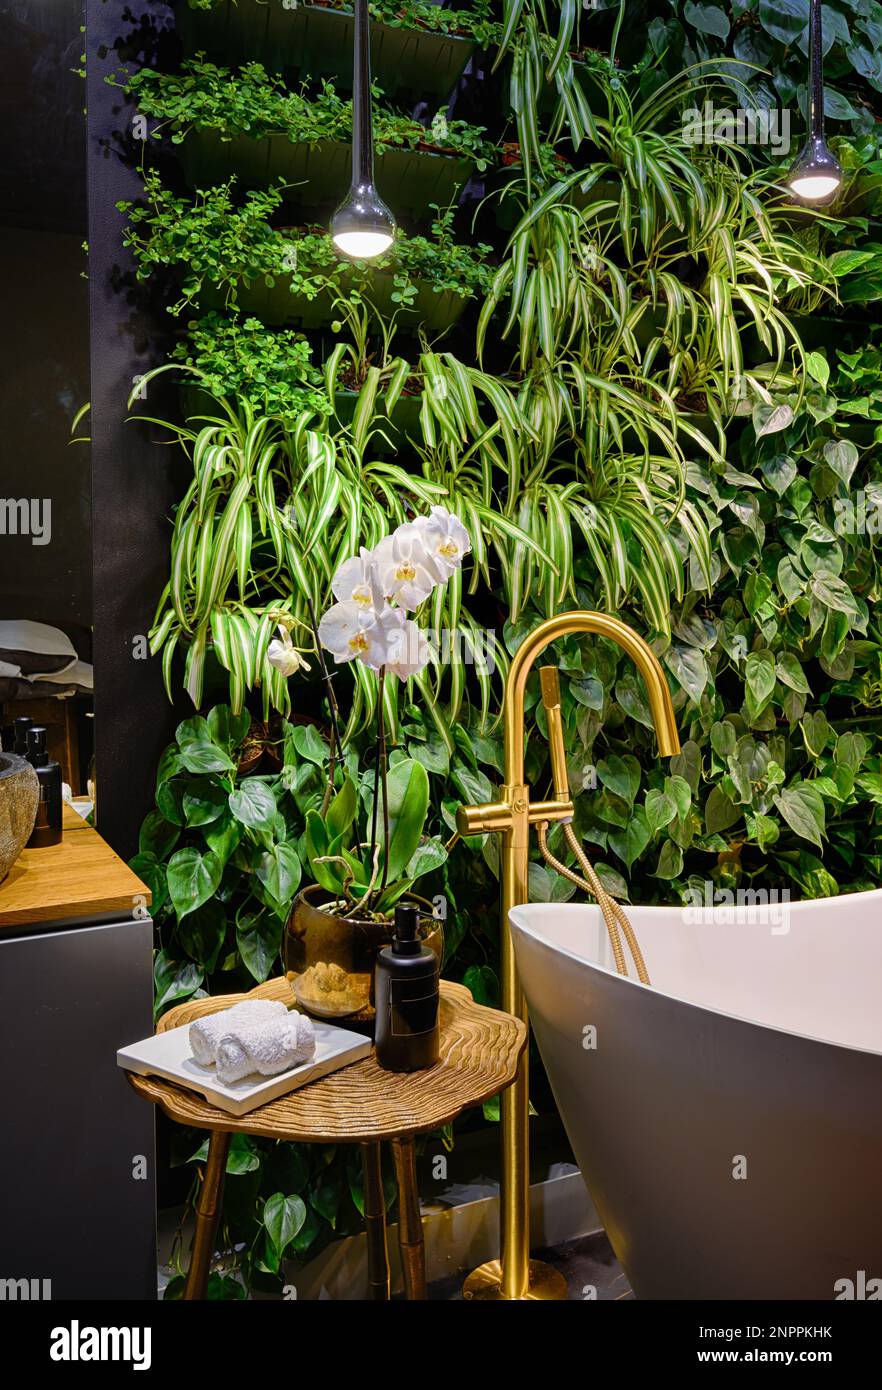 Salle de bain luxueuse dans le spa avec jardin vertical, baignoire dans le salon de beauté moderne. Mur de plantes vertes, fleurs et baignoire dans l'hôtel. Concept de la nature, Banque D'Images